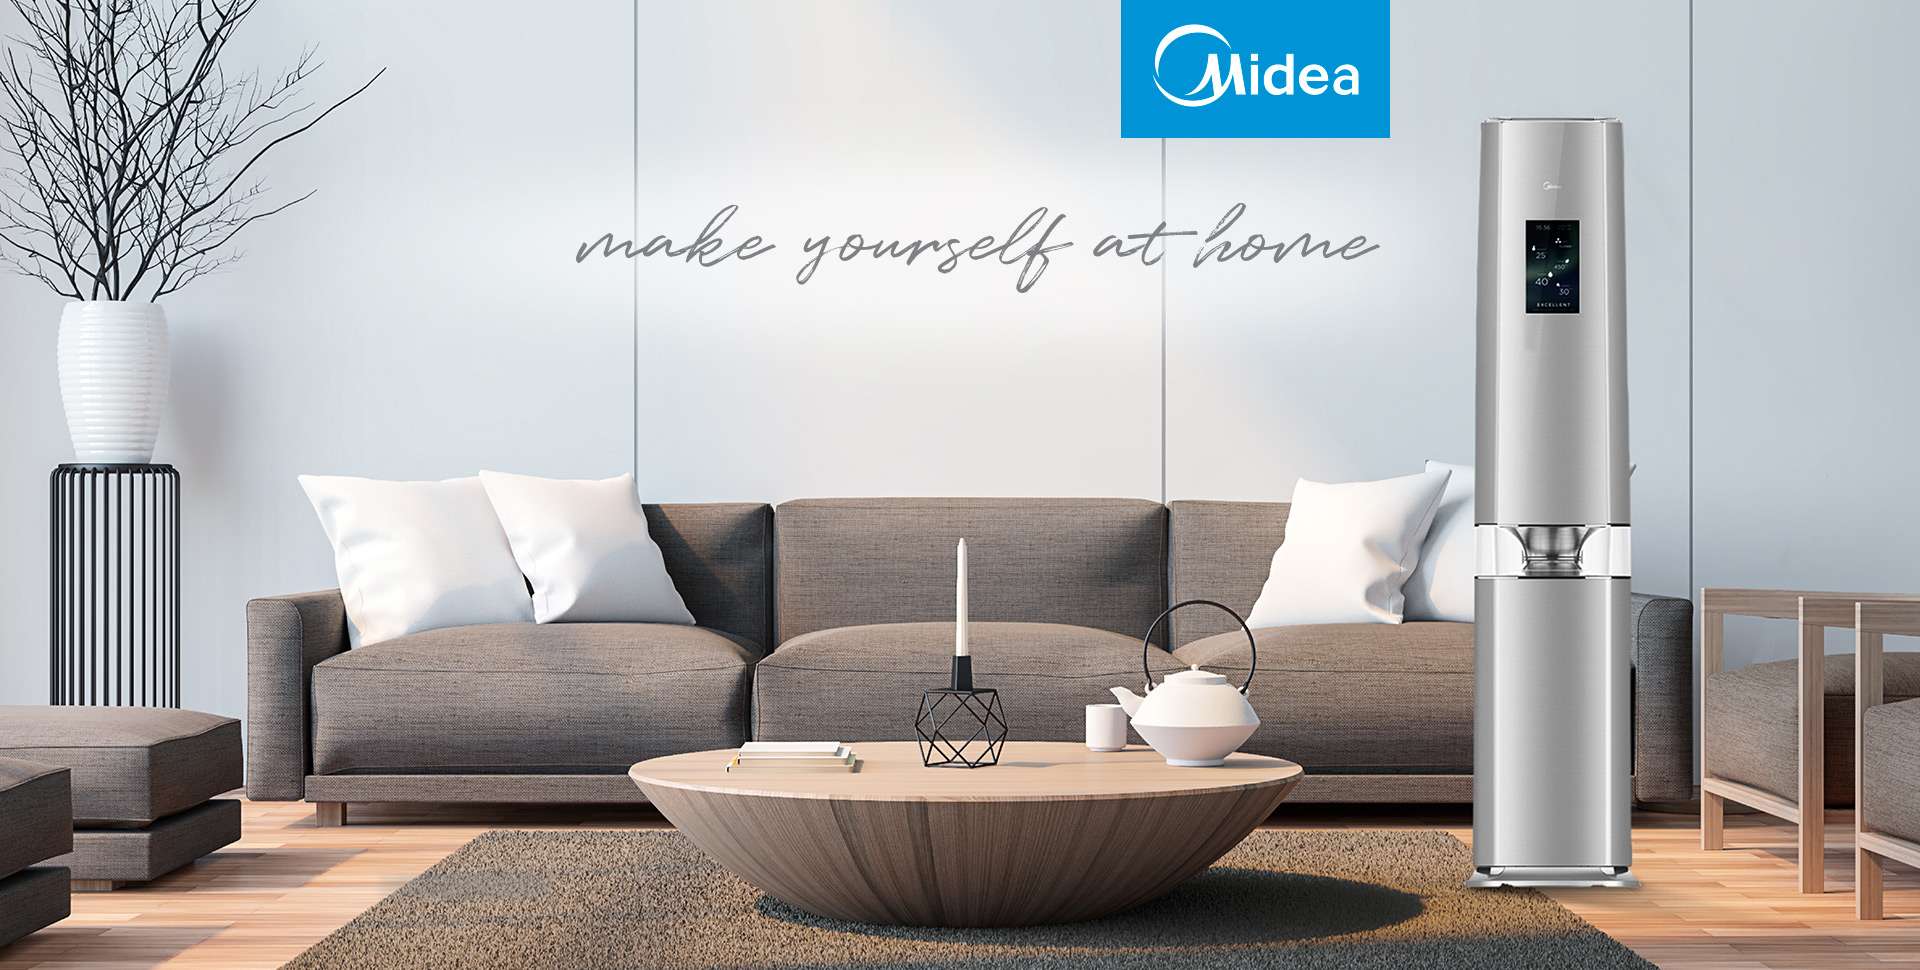 Midea Home Appliances  Our Businesses - Midea Group